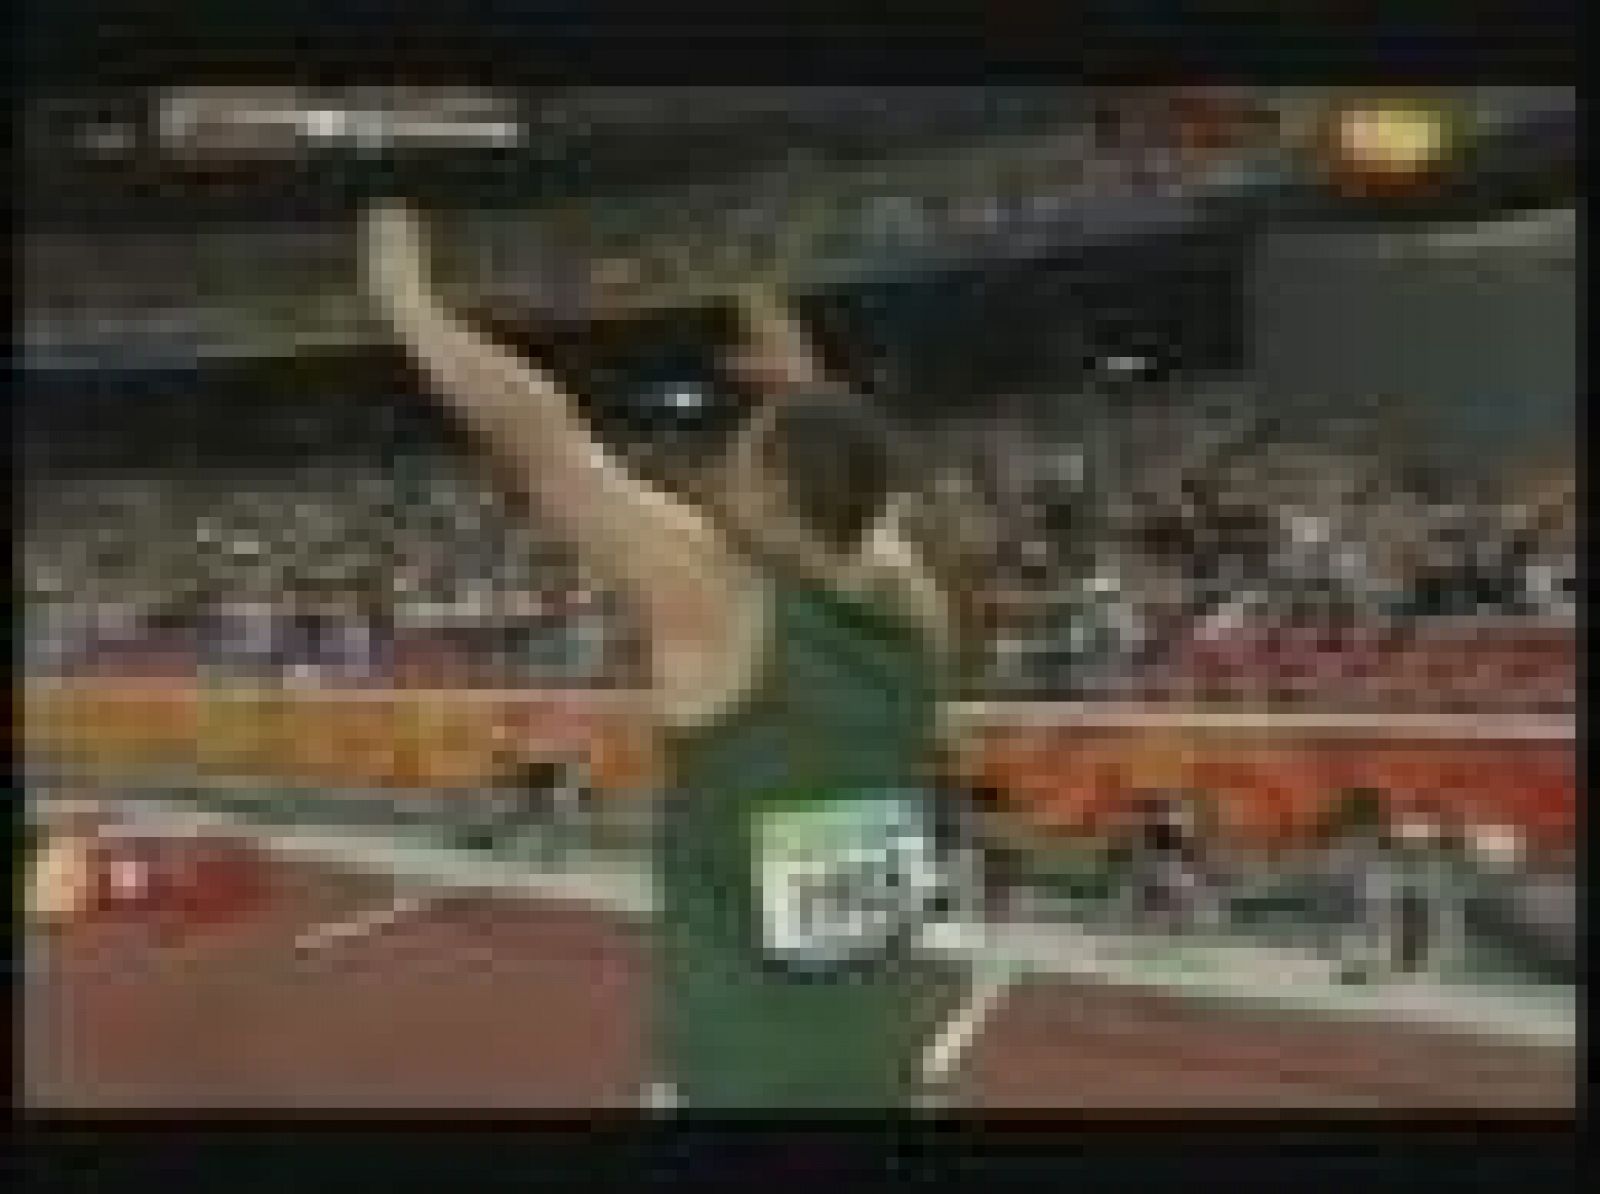 El atleta surafricano Oscar Pistorius, que corre con prótesis en sus dos piernas, ganó el primero de los oros que persigue en los Juegos Paralímicos de Pekín, en los 100 metros lisos.